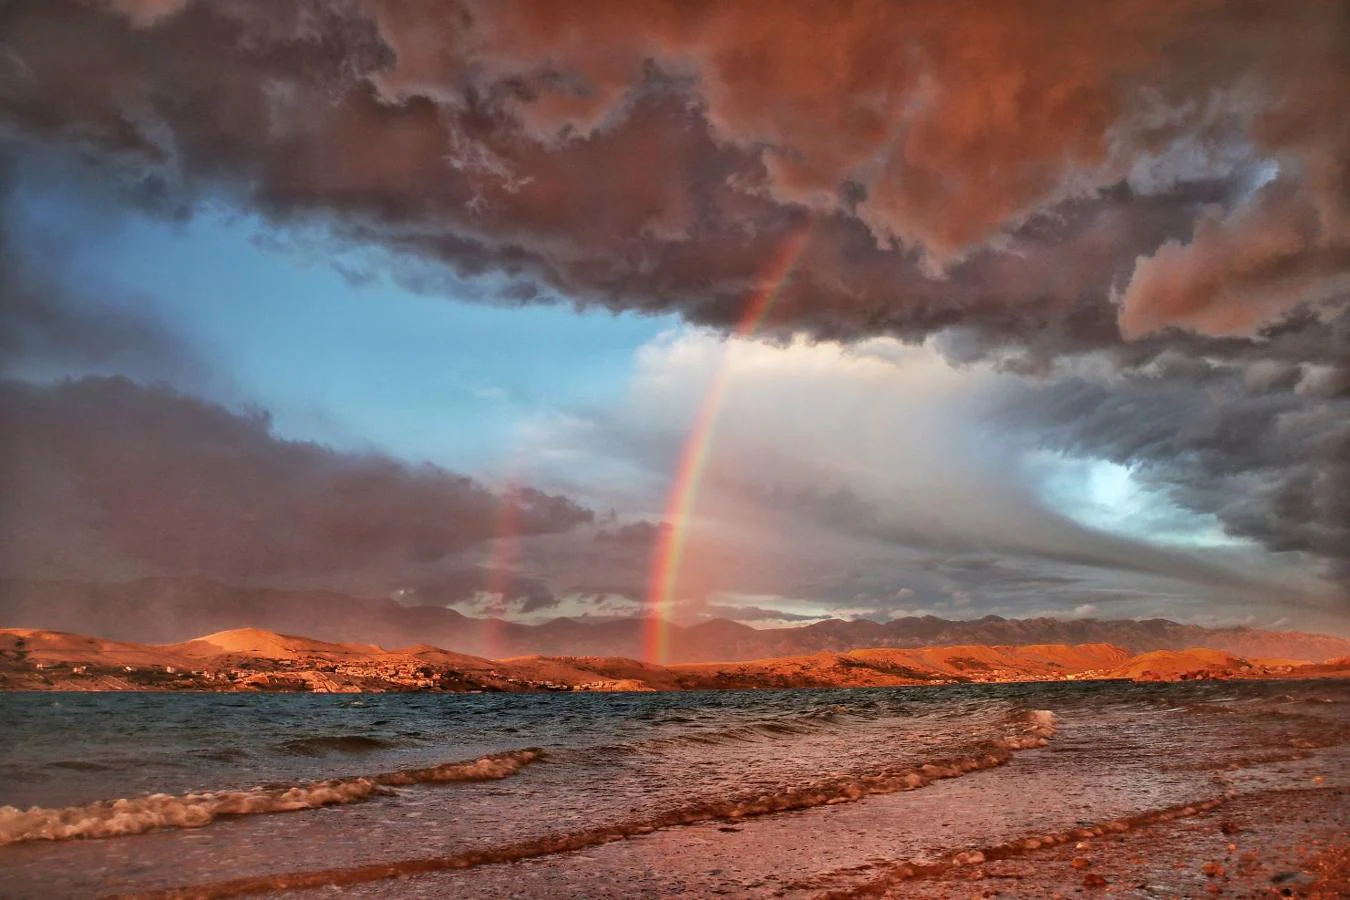 Arcoíris después de la tormenta. El concurso de fotografía ha ganado en importancia y reconocimiento desde que se lanzó en 2014